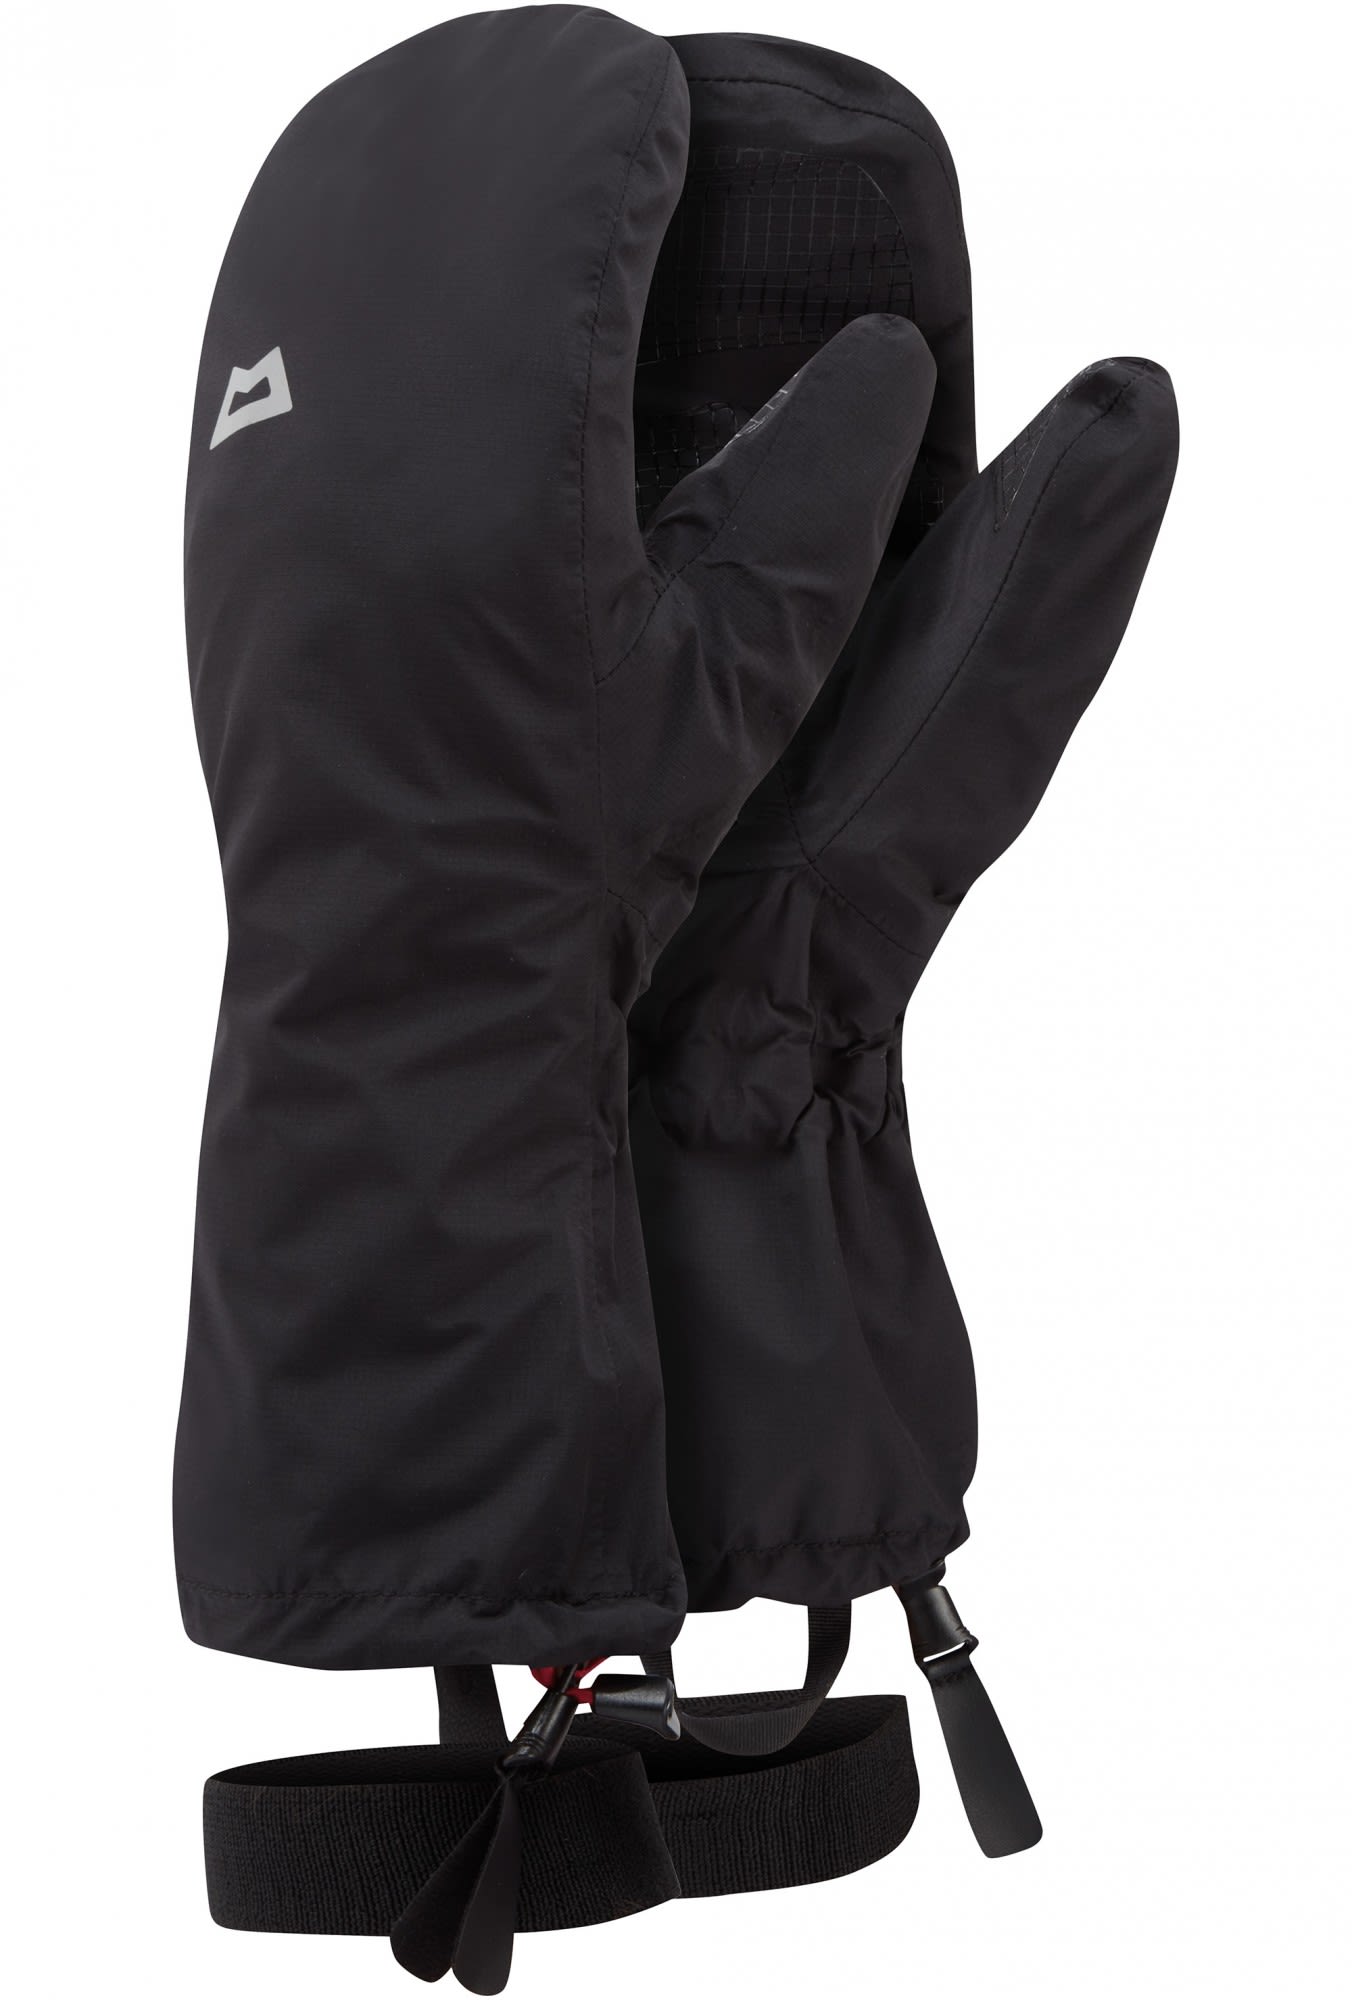 Mountain Equipment Wasserdichte funktionale Drilite® Handschuhe Black